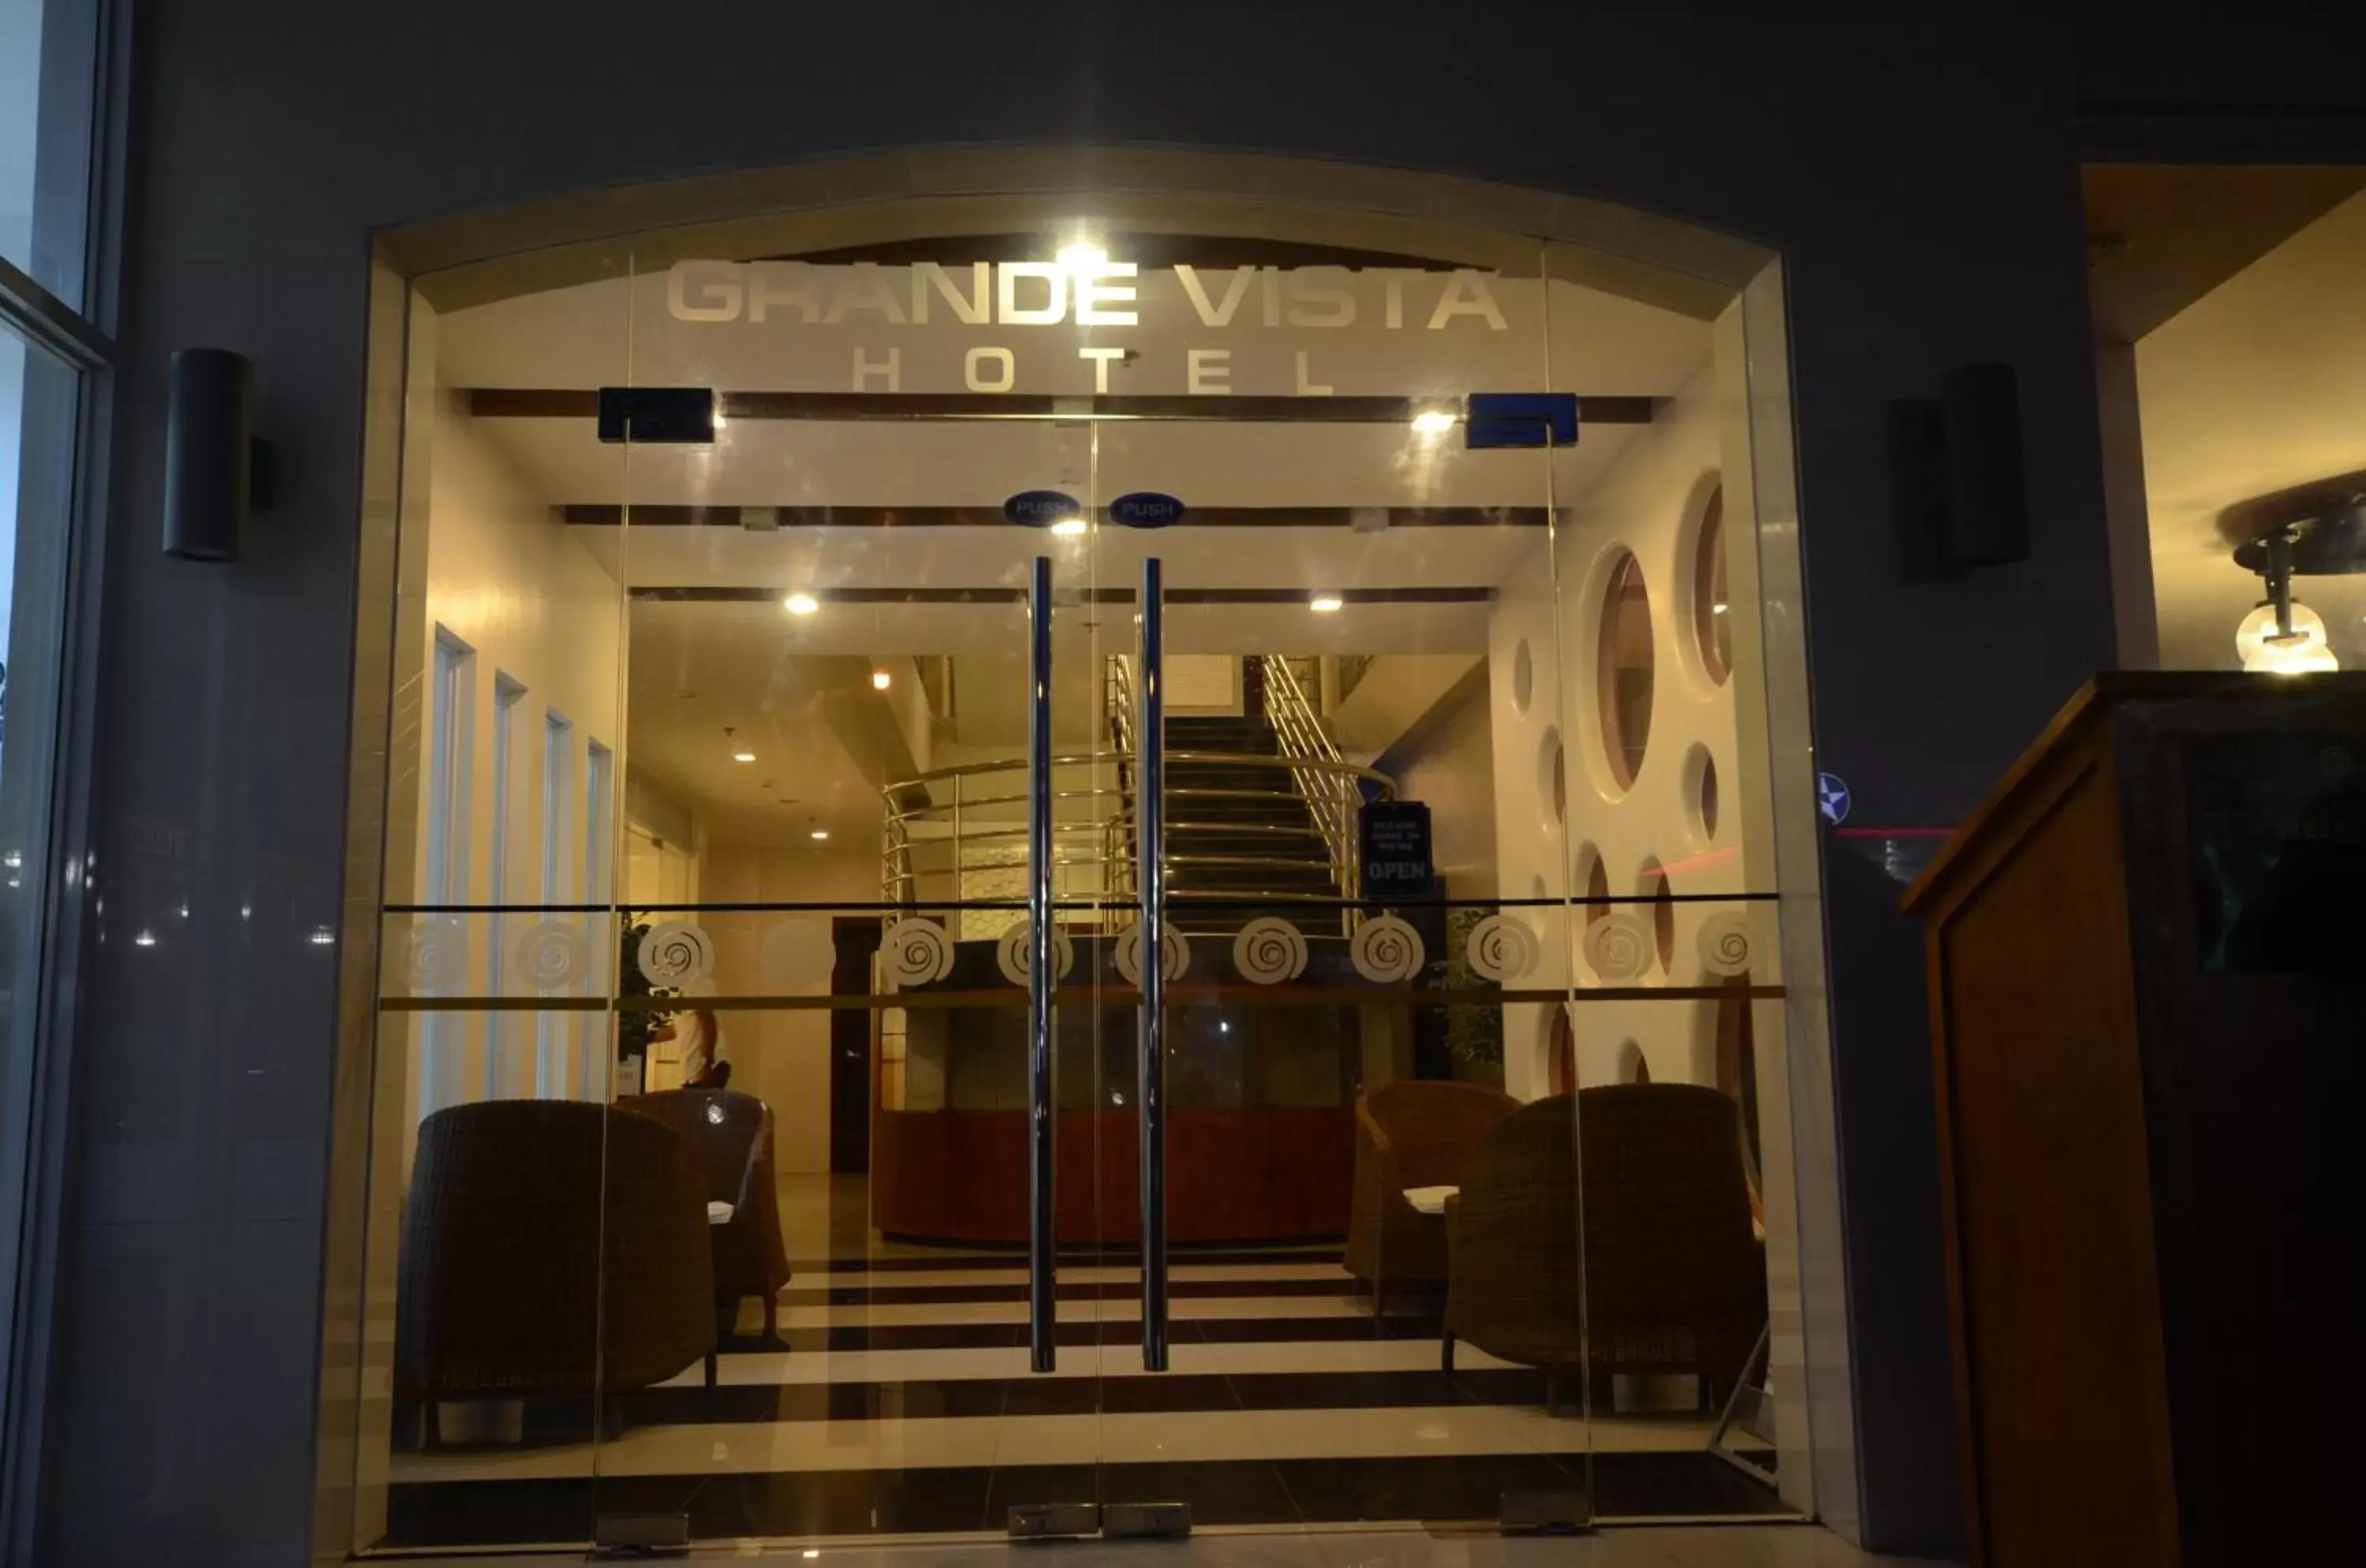 Facade/entrance in Grande Vista Hotel